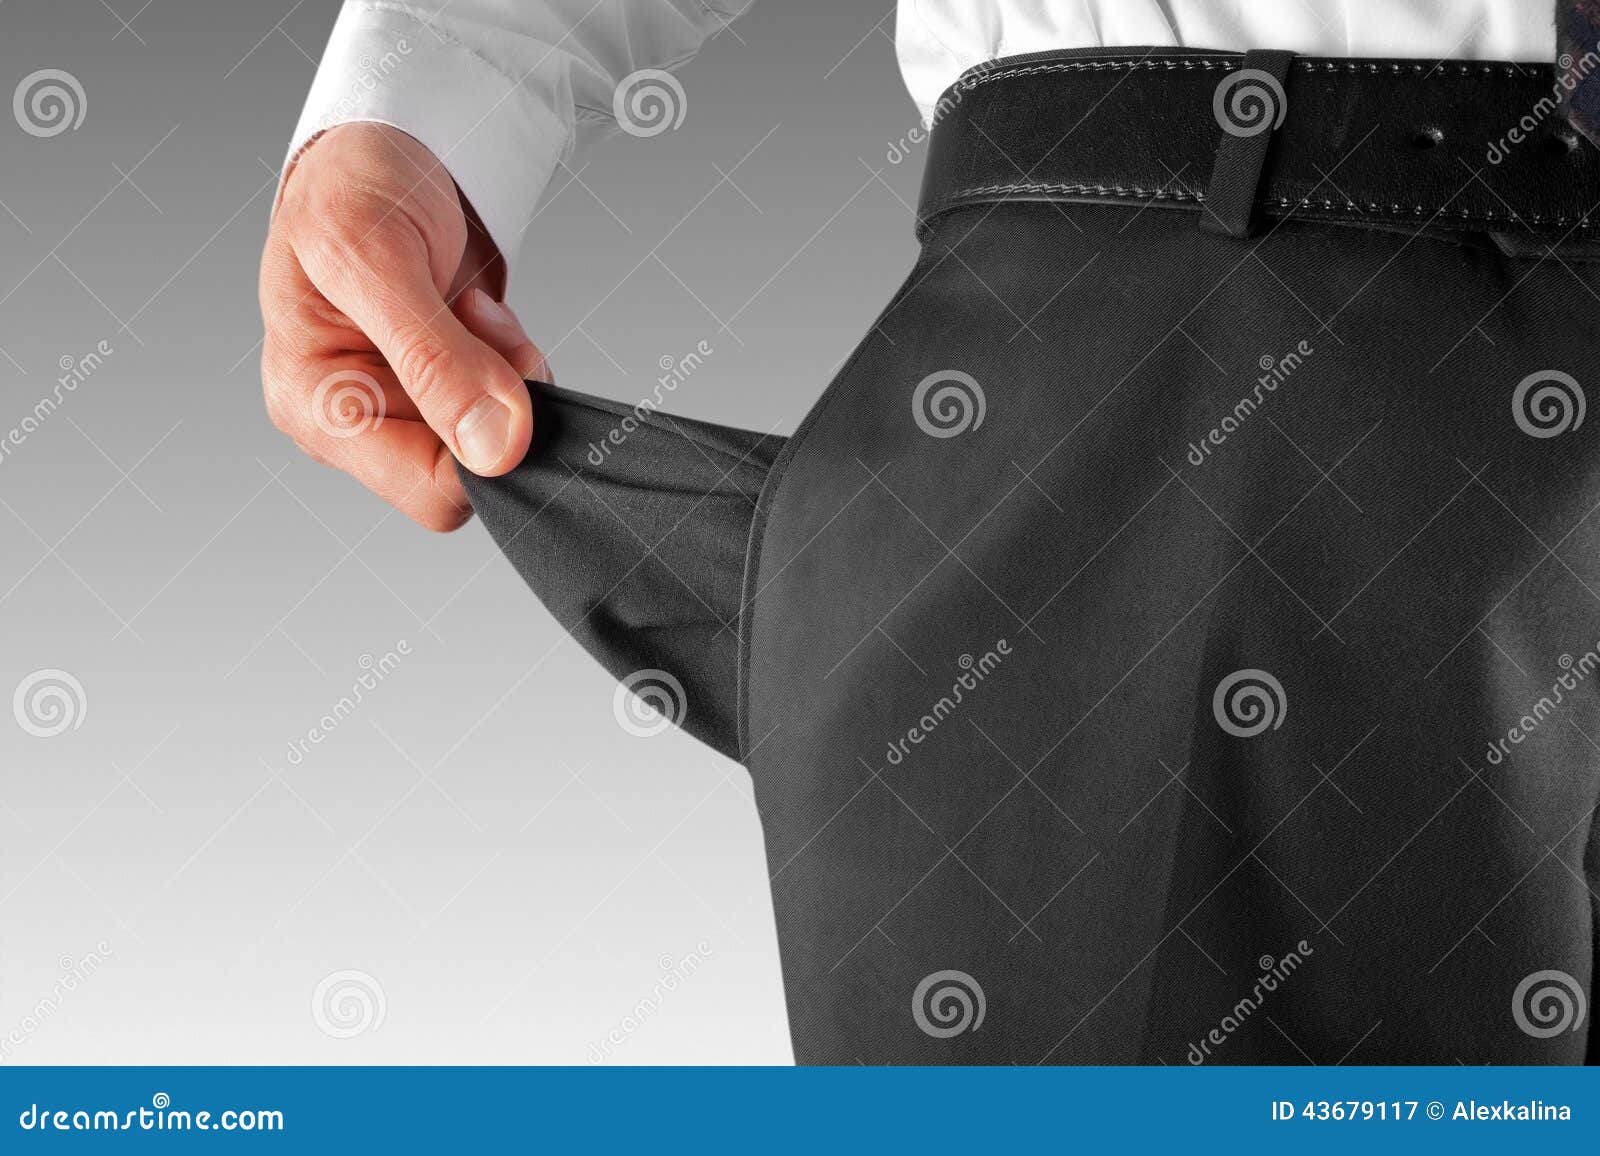 bankrupt man showing empty pocket